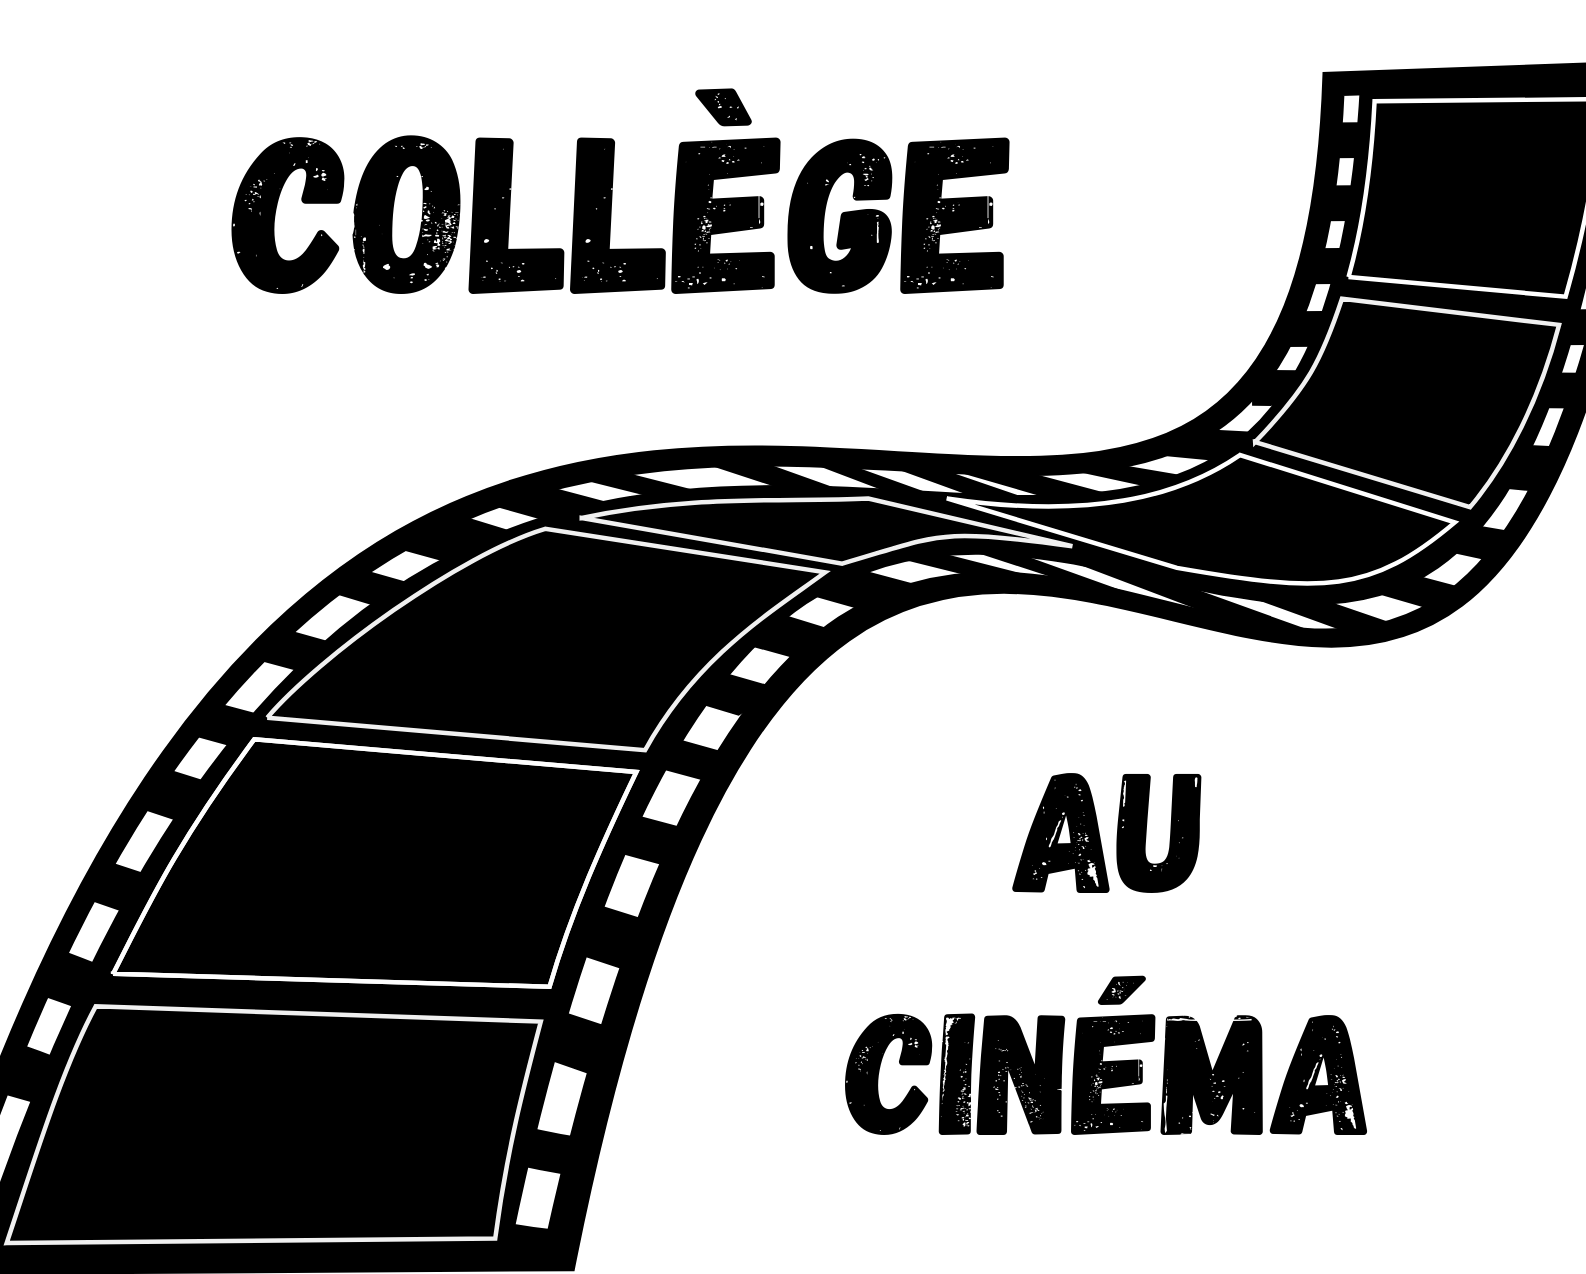 Collège au ciné logo.png